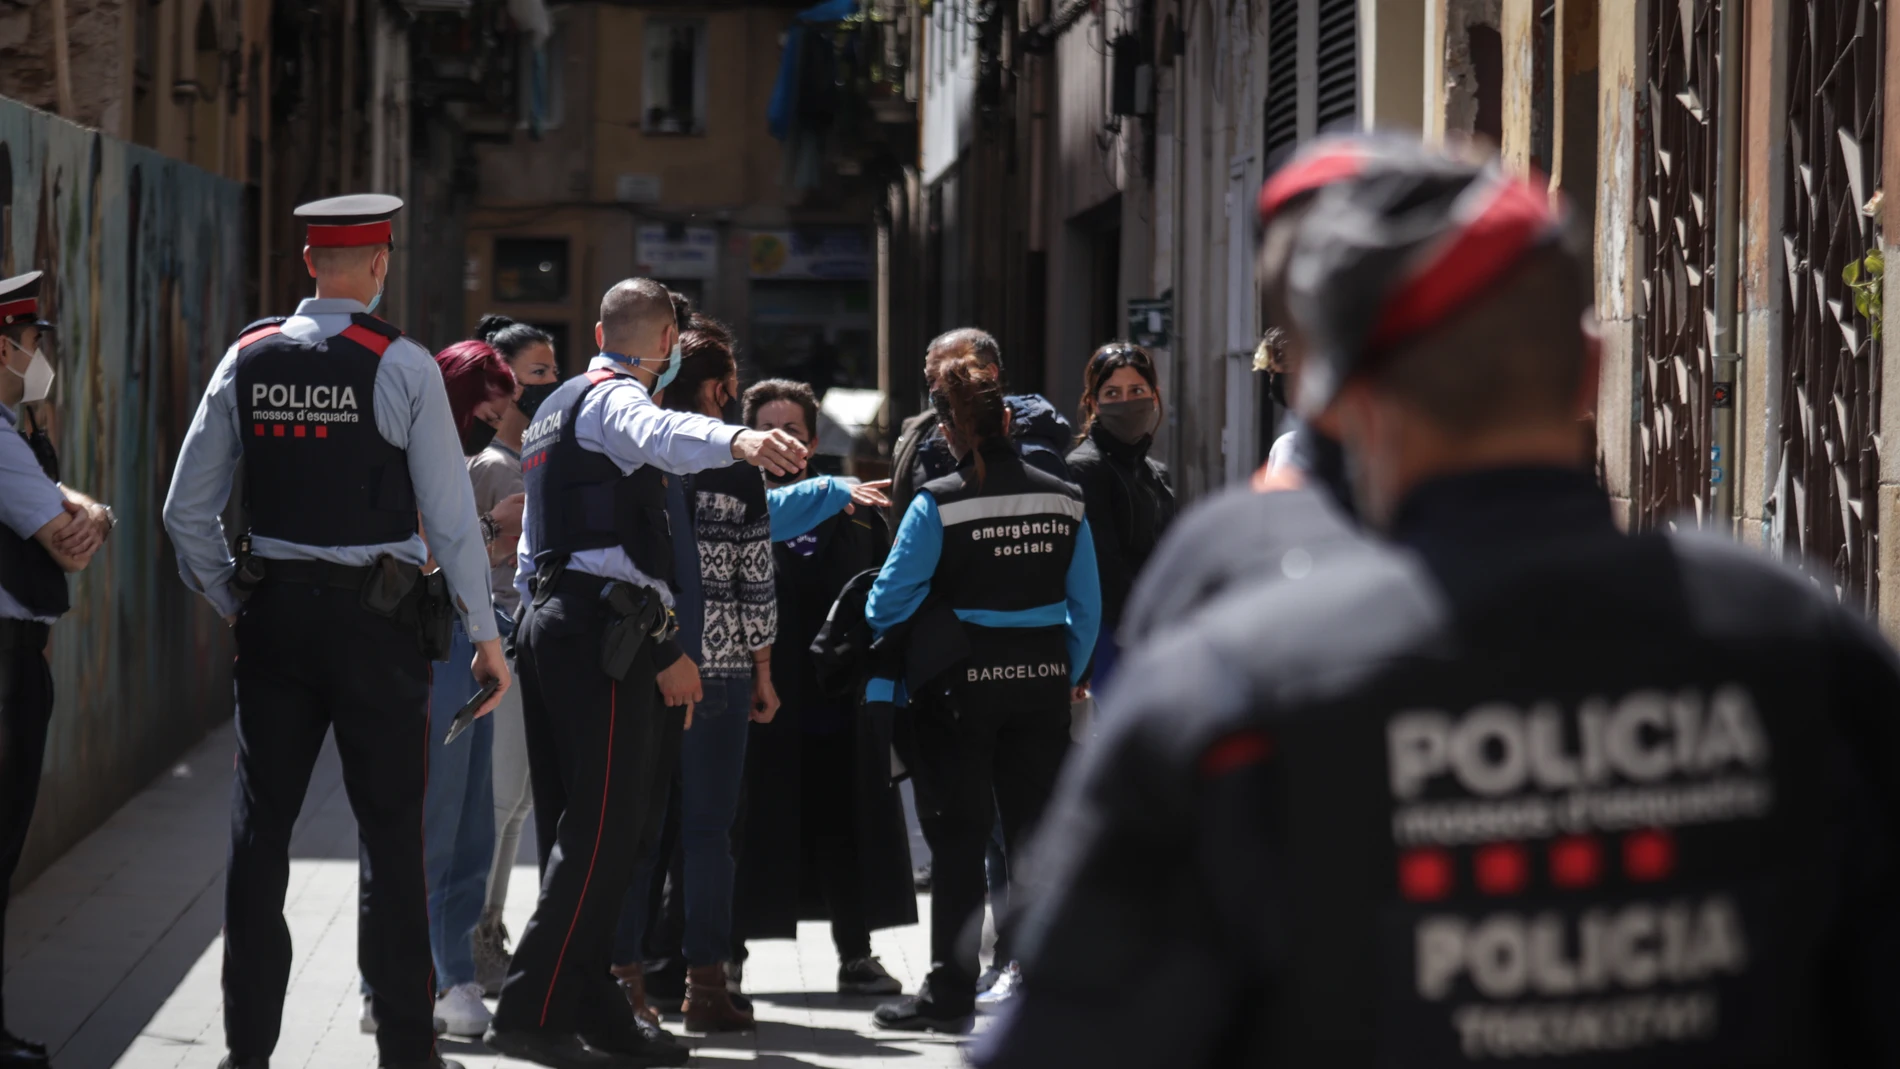 Mossos d’esquadra intervienen durante un desahucio en Barcelona